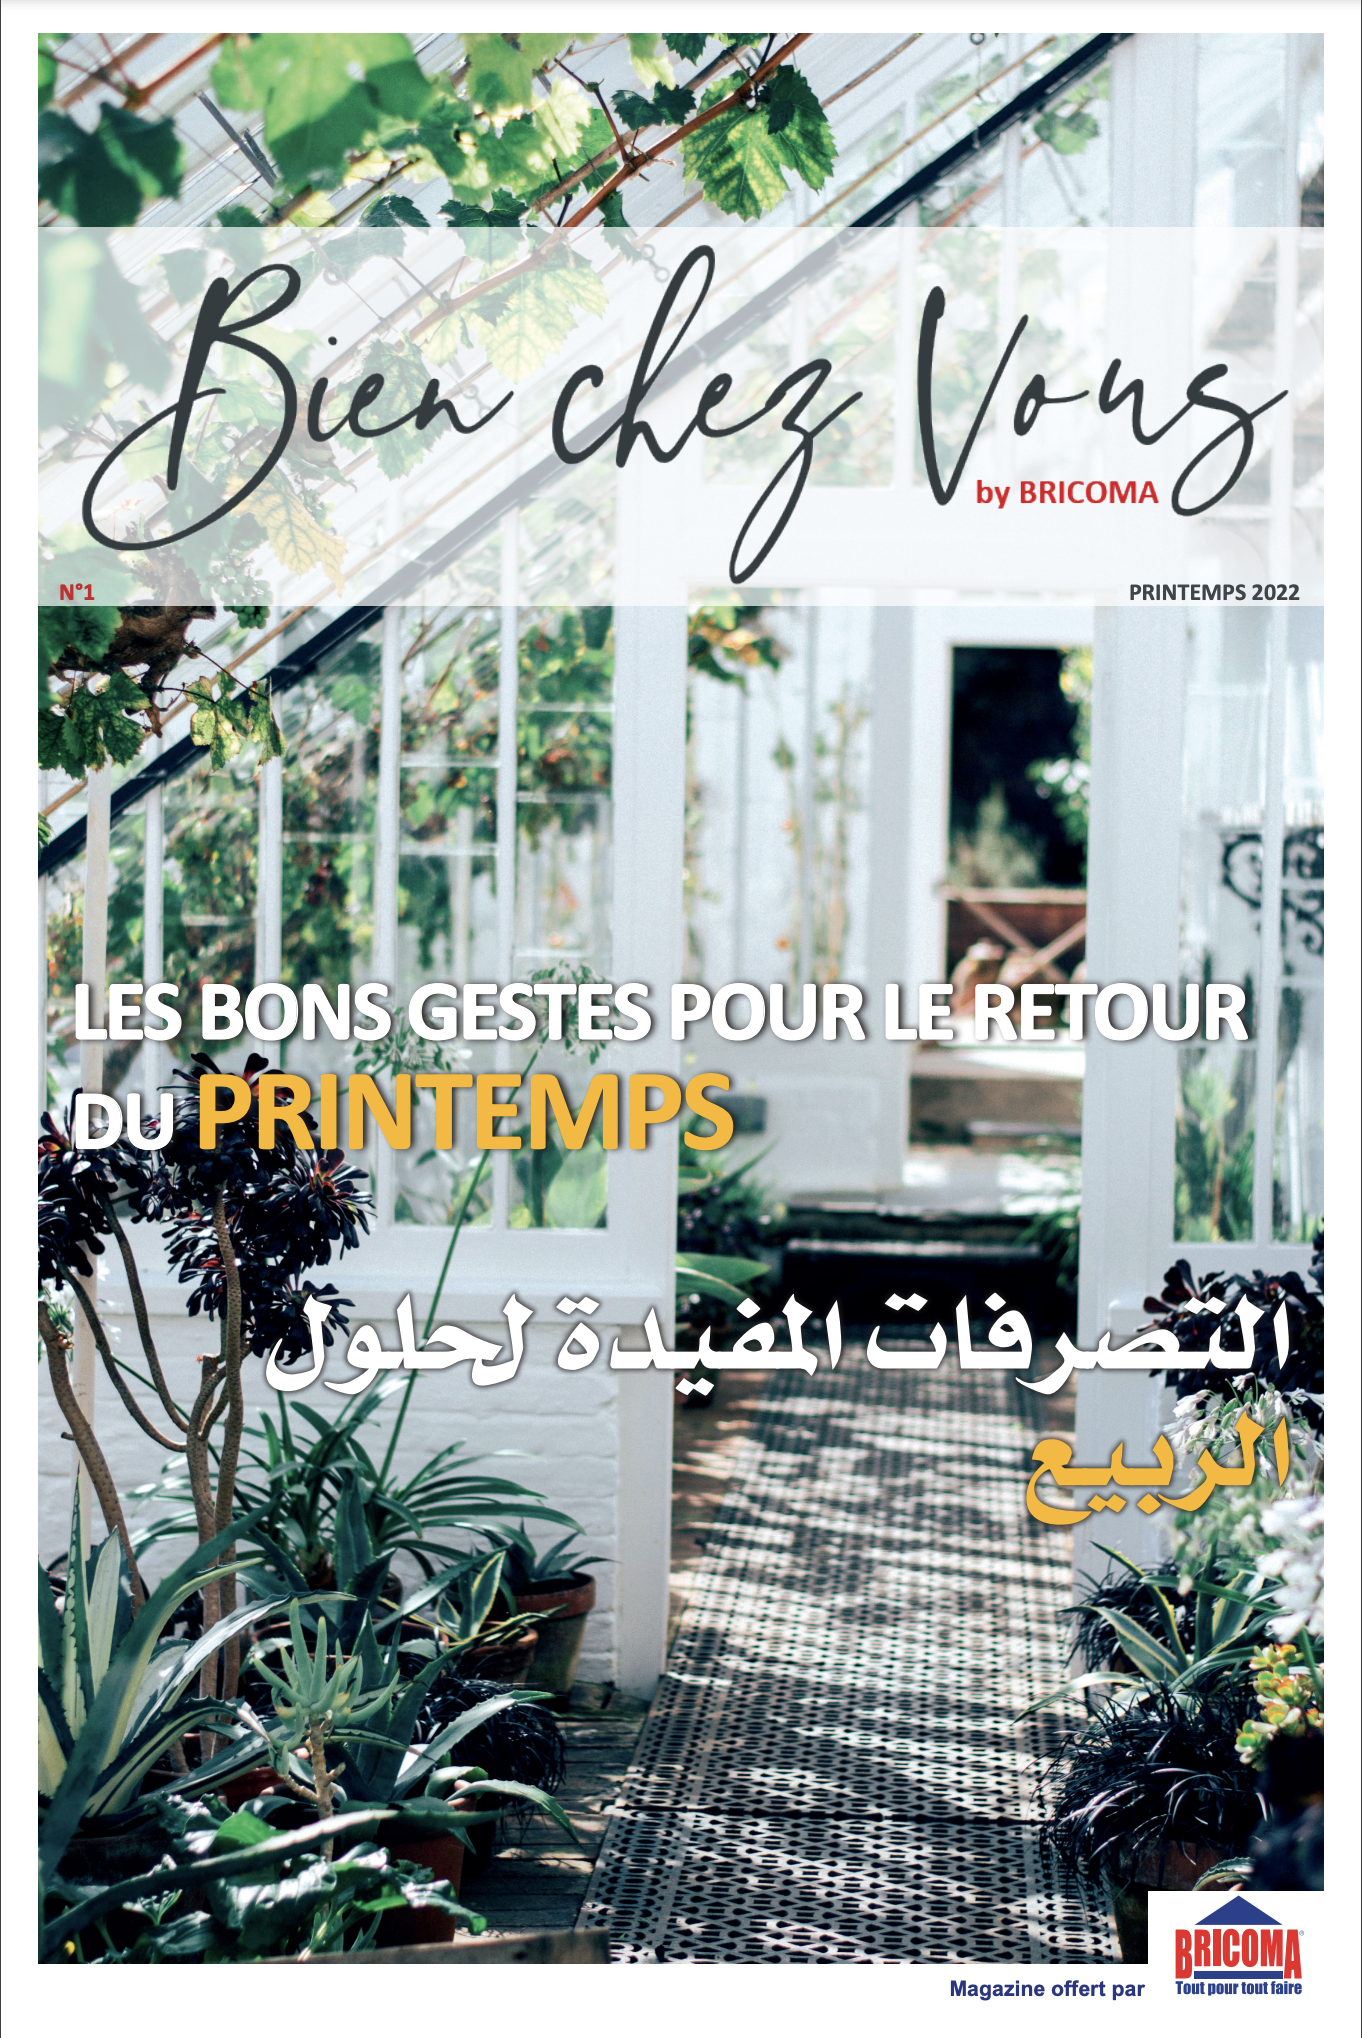 Magazine bien chez vous by Bricoma édition printemps 2022